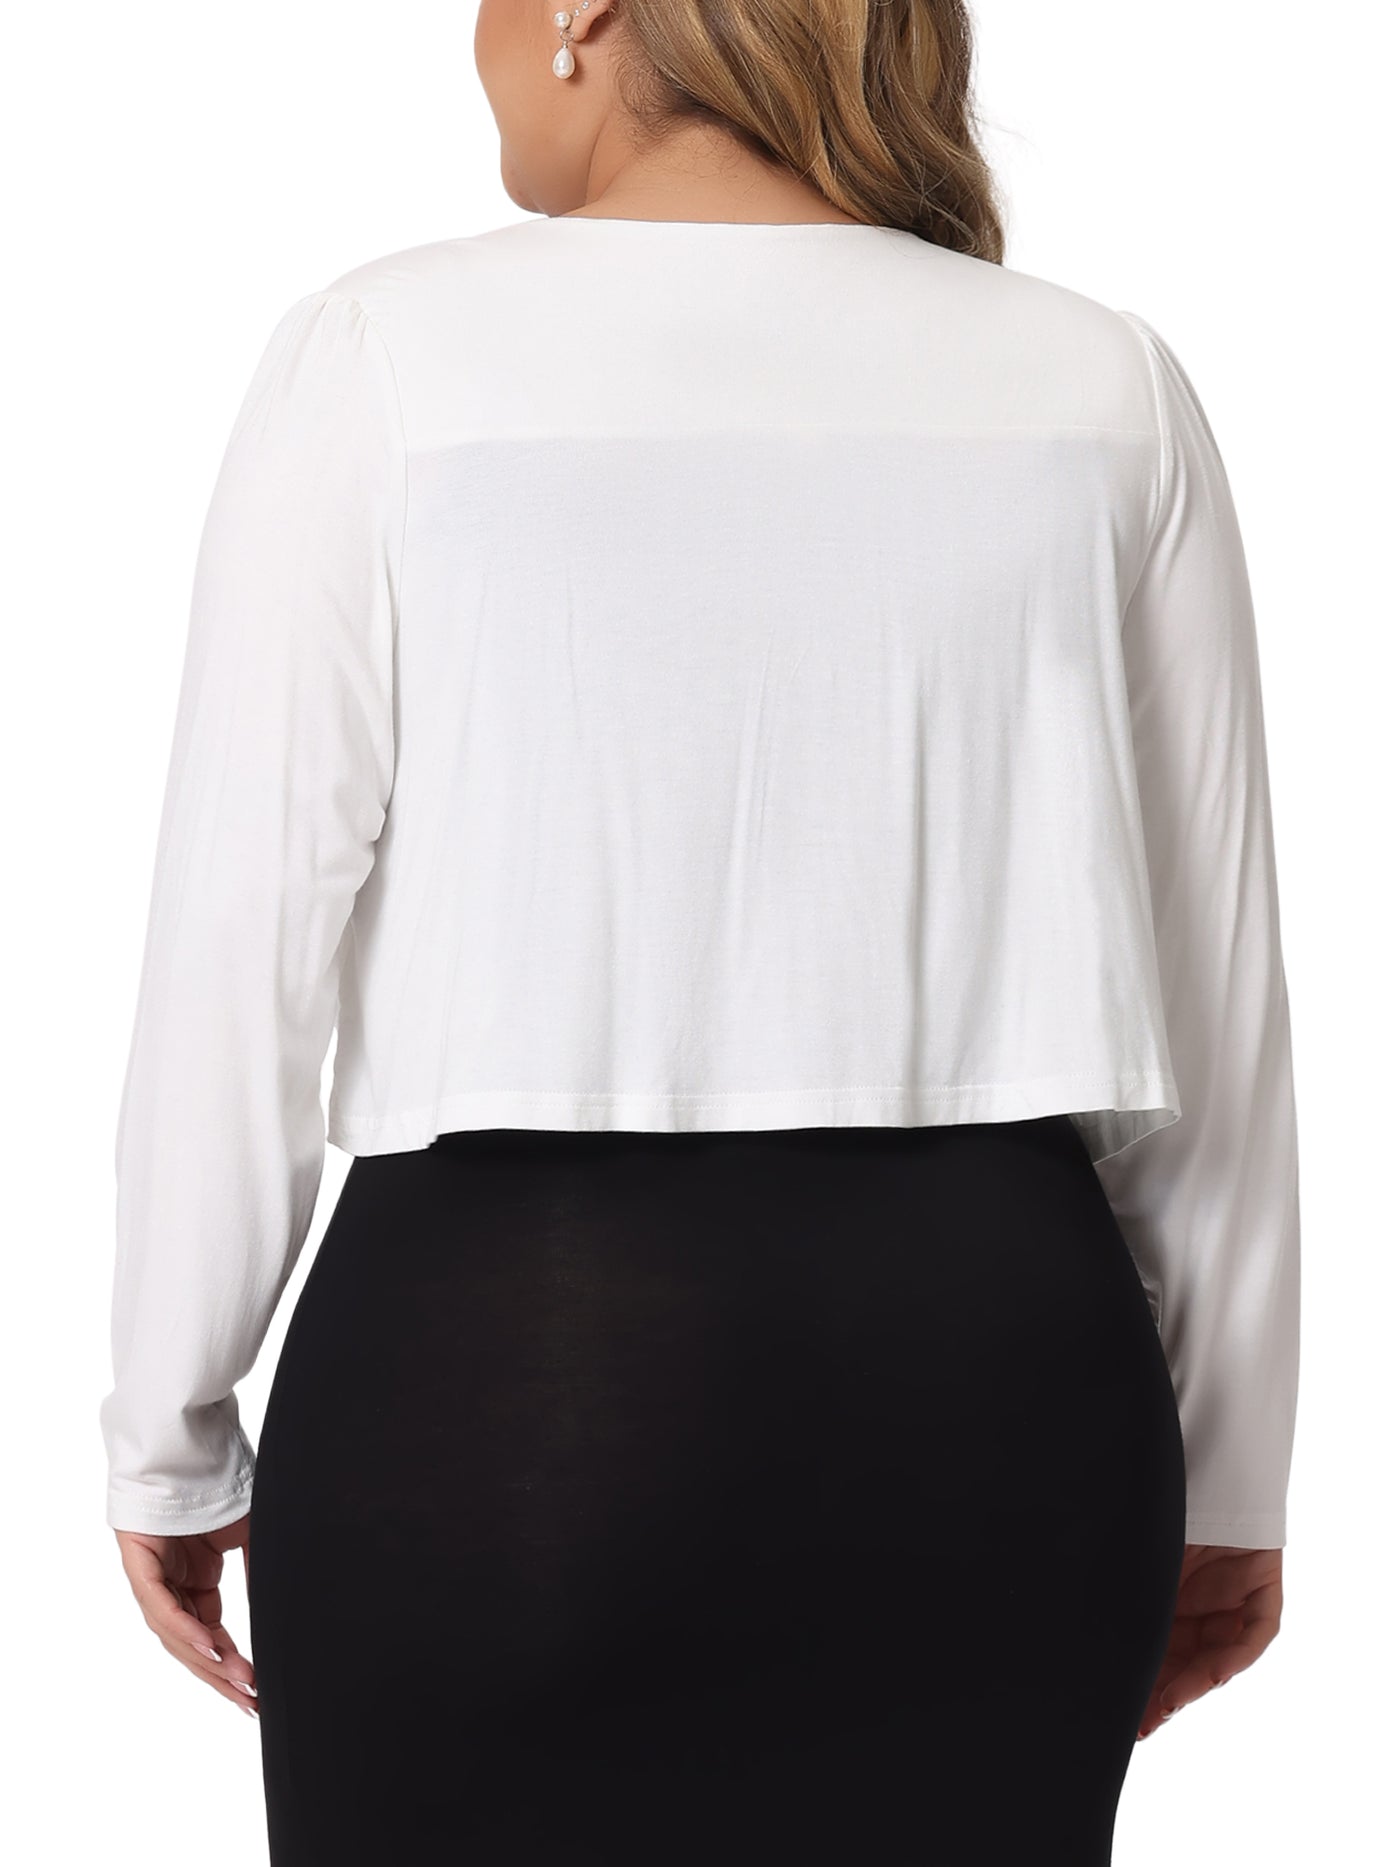 Bublédon Plus Size Cardigan for Women Long Sleeve Open Front Elegant Cropped Shrugs Bolero Cardigans